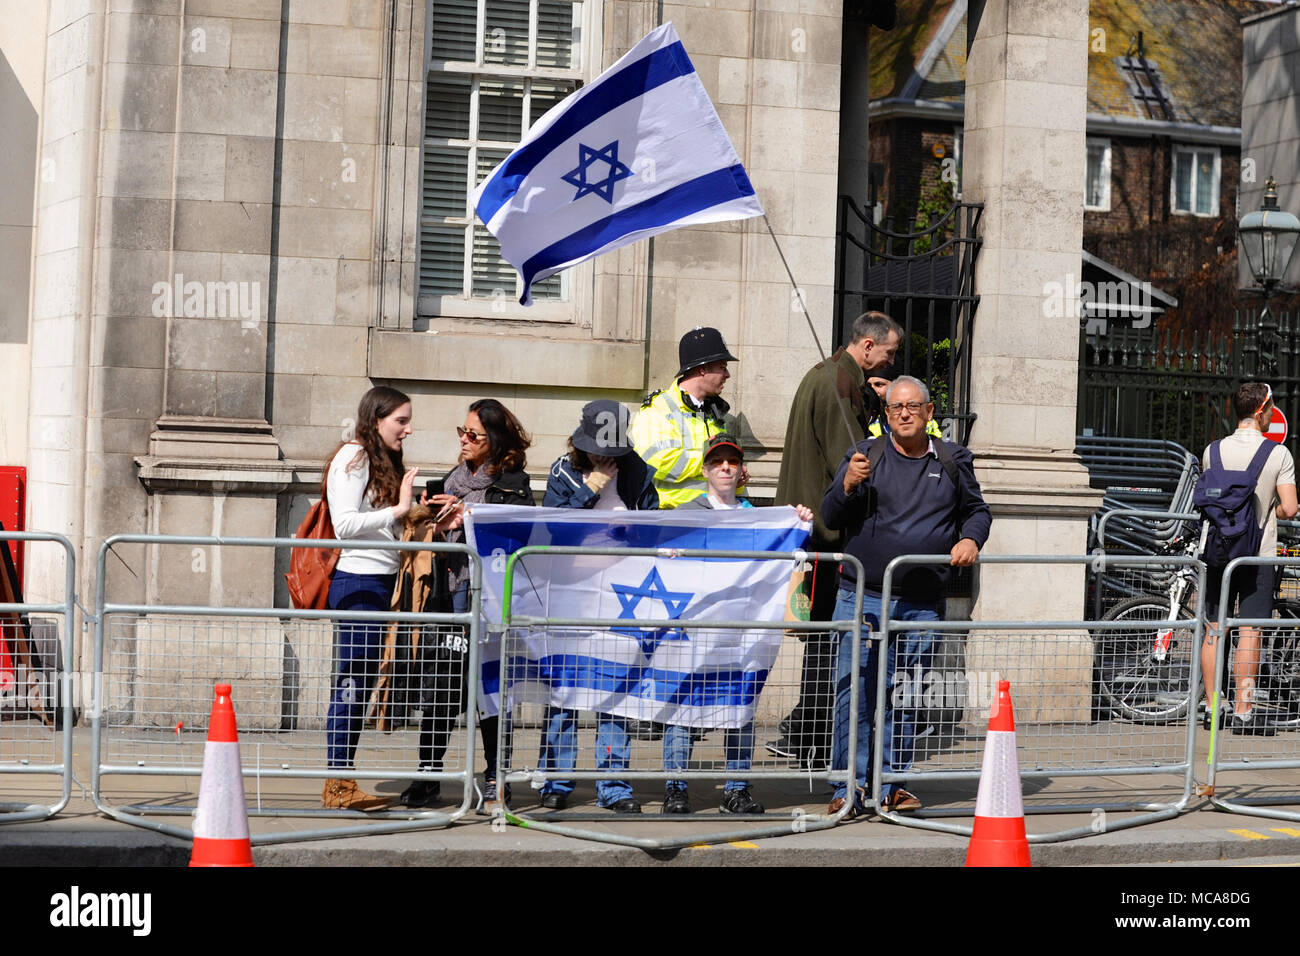 Londra, UK 14 aprile 2018 contingente di pro-Israele dimostranti fuori l'ambasciata Israeliana in Kensington, London, Regno Unito. I dimostranti hanno perlopiù heckled il significativamente maggiore di pro-palestinese dimostrazione sul lato opposto della strada. Il pro-palestinese dimostrazione è stato chiamato per protestare contro la continua tensione nella striscia di Gaza a seguito dei recenti atti di violenza tra i due lati. Credito: Michael Preston/Alamy Live News Foto Stock